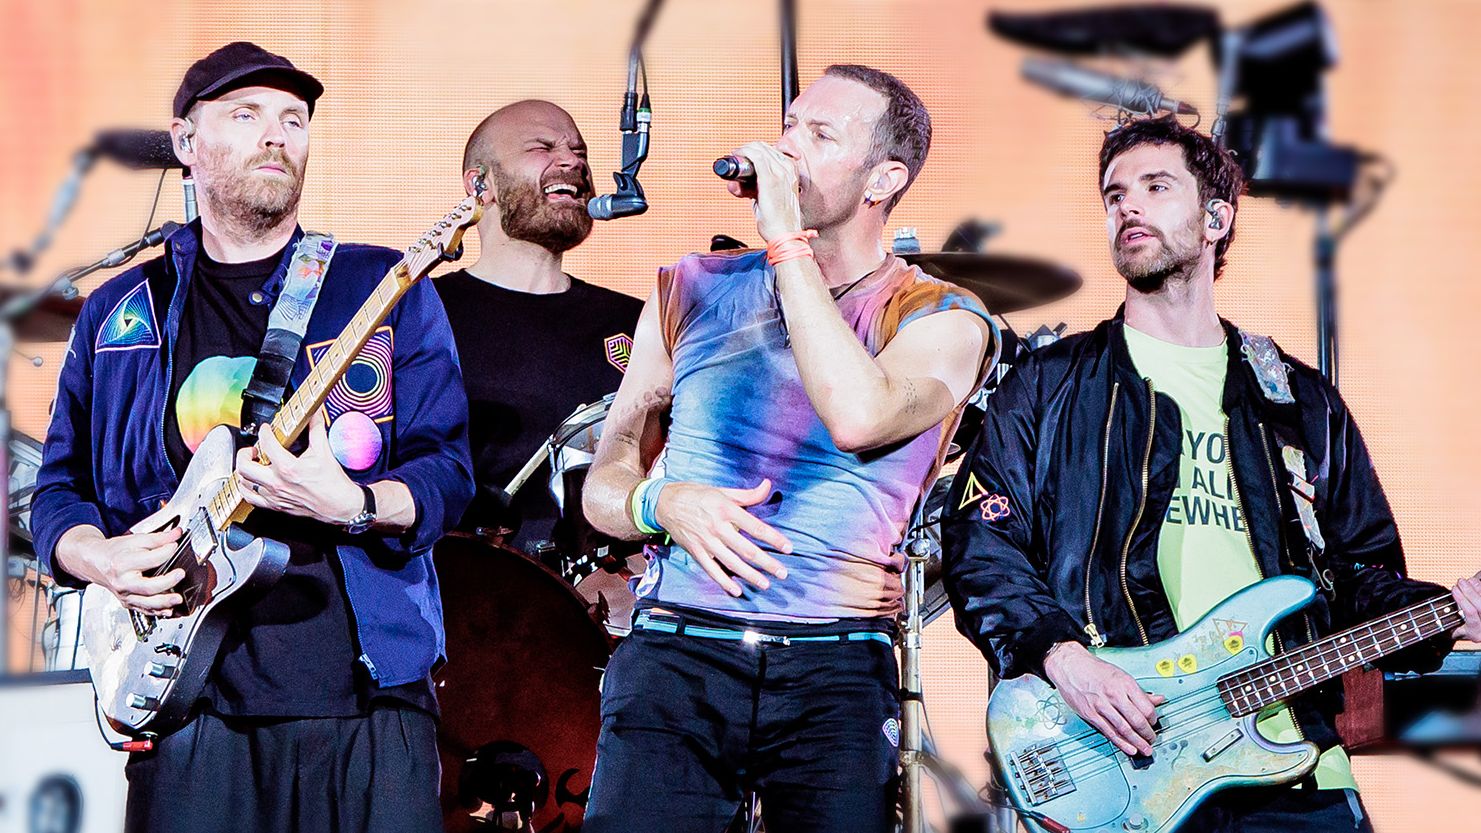 Οι Coldplay περιμένουν πως και πως να έρθουν Ελλάδα -Το βίντεο που ανέβασαν στο TikTok